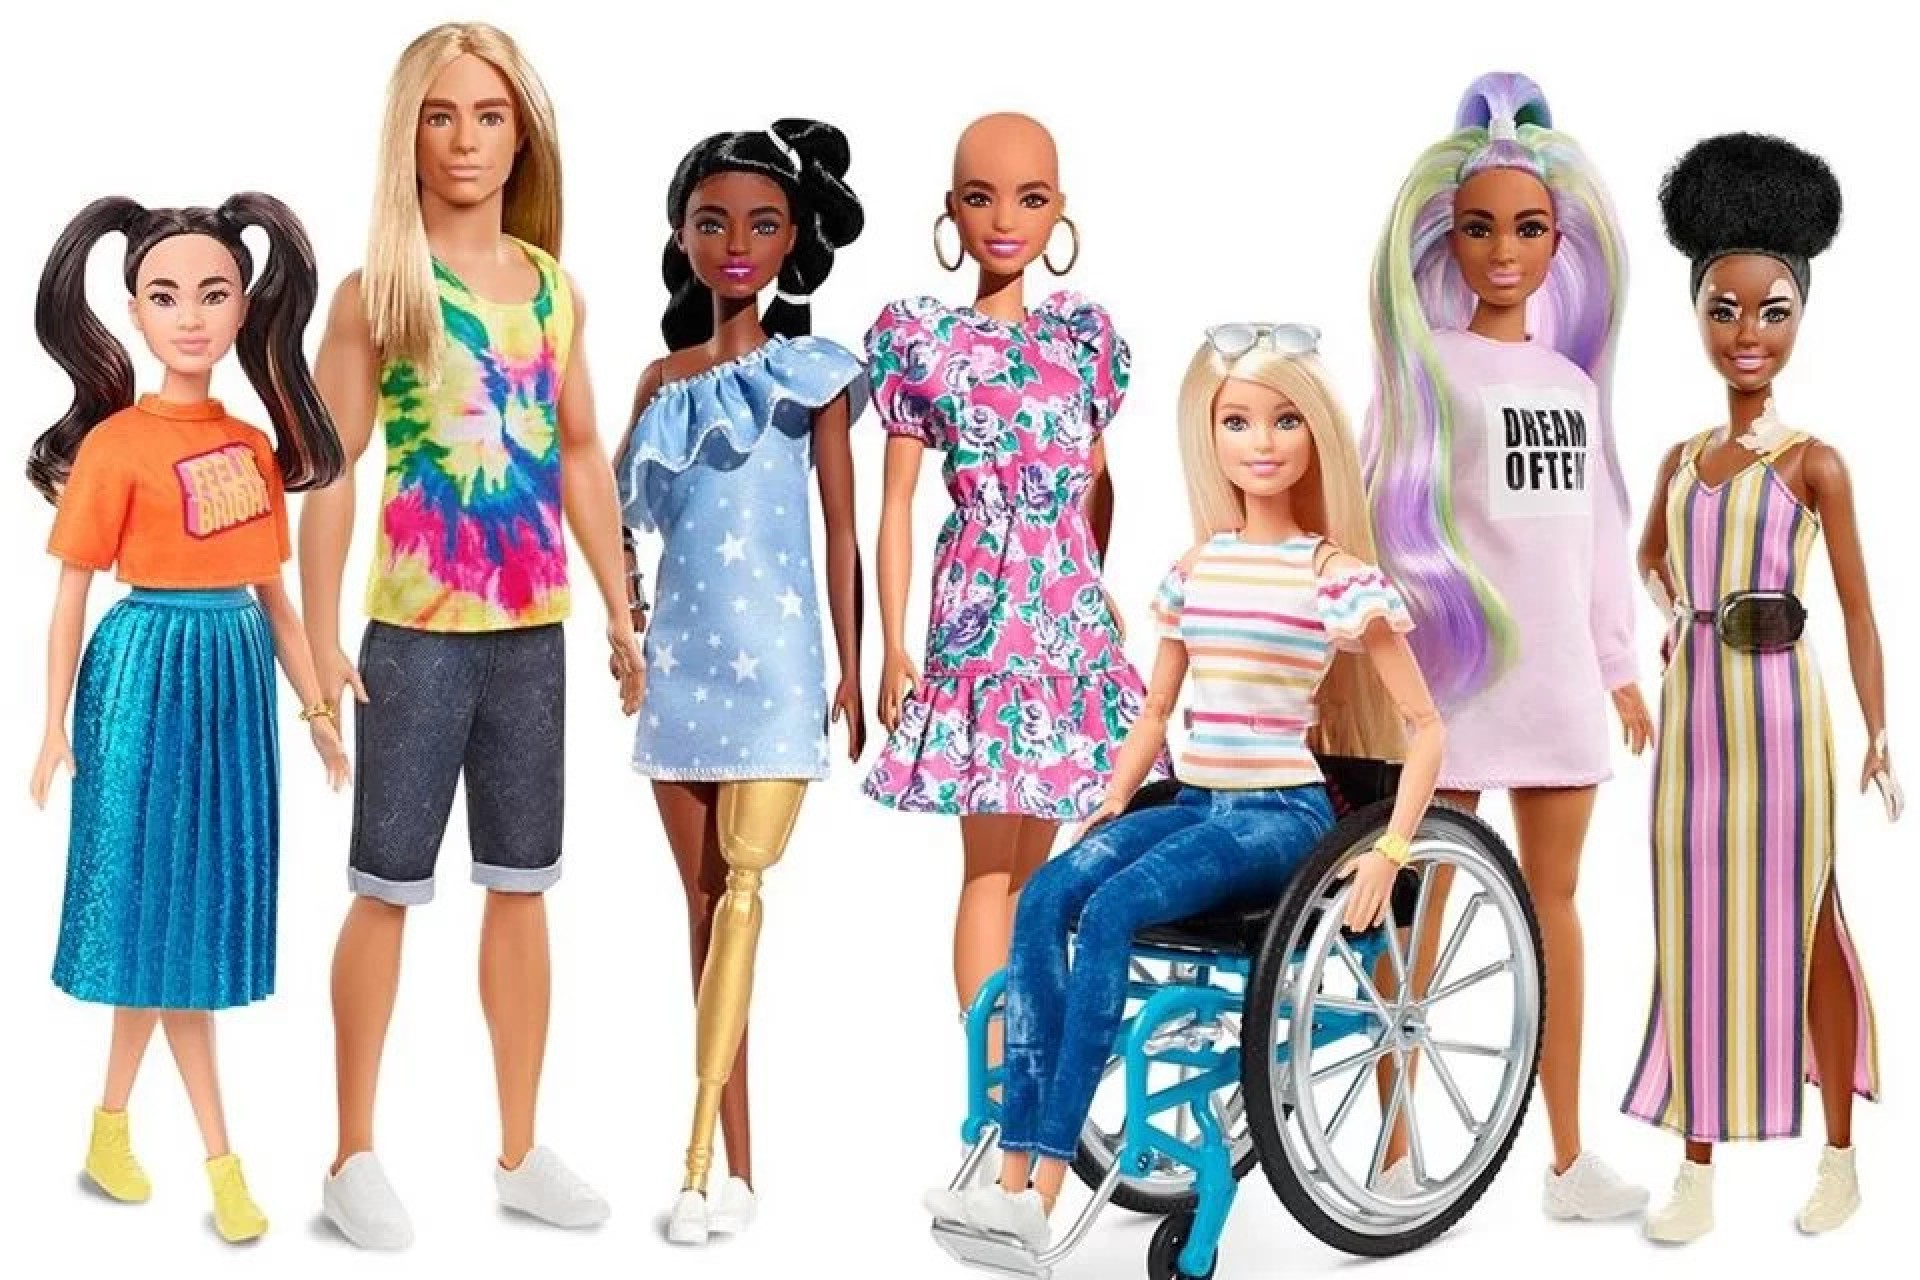 Mattel lança Barbie com Síndrome de Down: 'Brincadeira combate preconceito'  - DiversEM - Estado de Minas